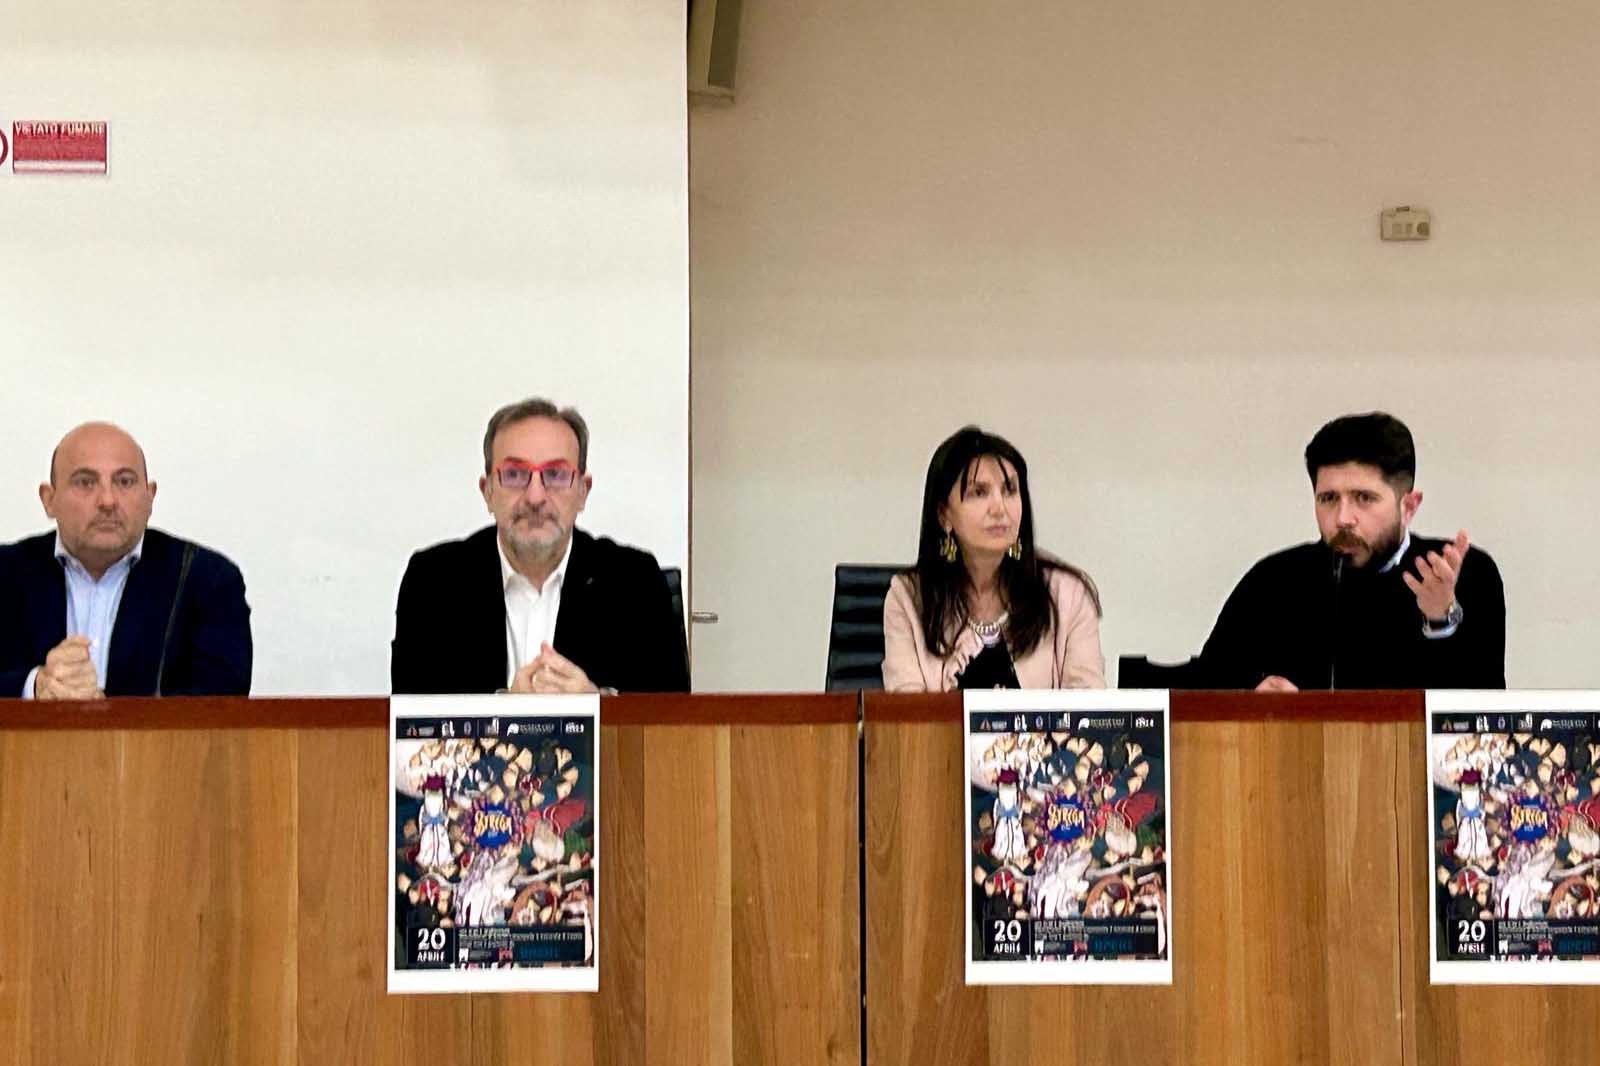 In foto da sinistra Paolo Di Caro, Davide Bennato, Marina Paino e Simone Dei Pieri